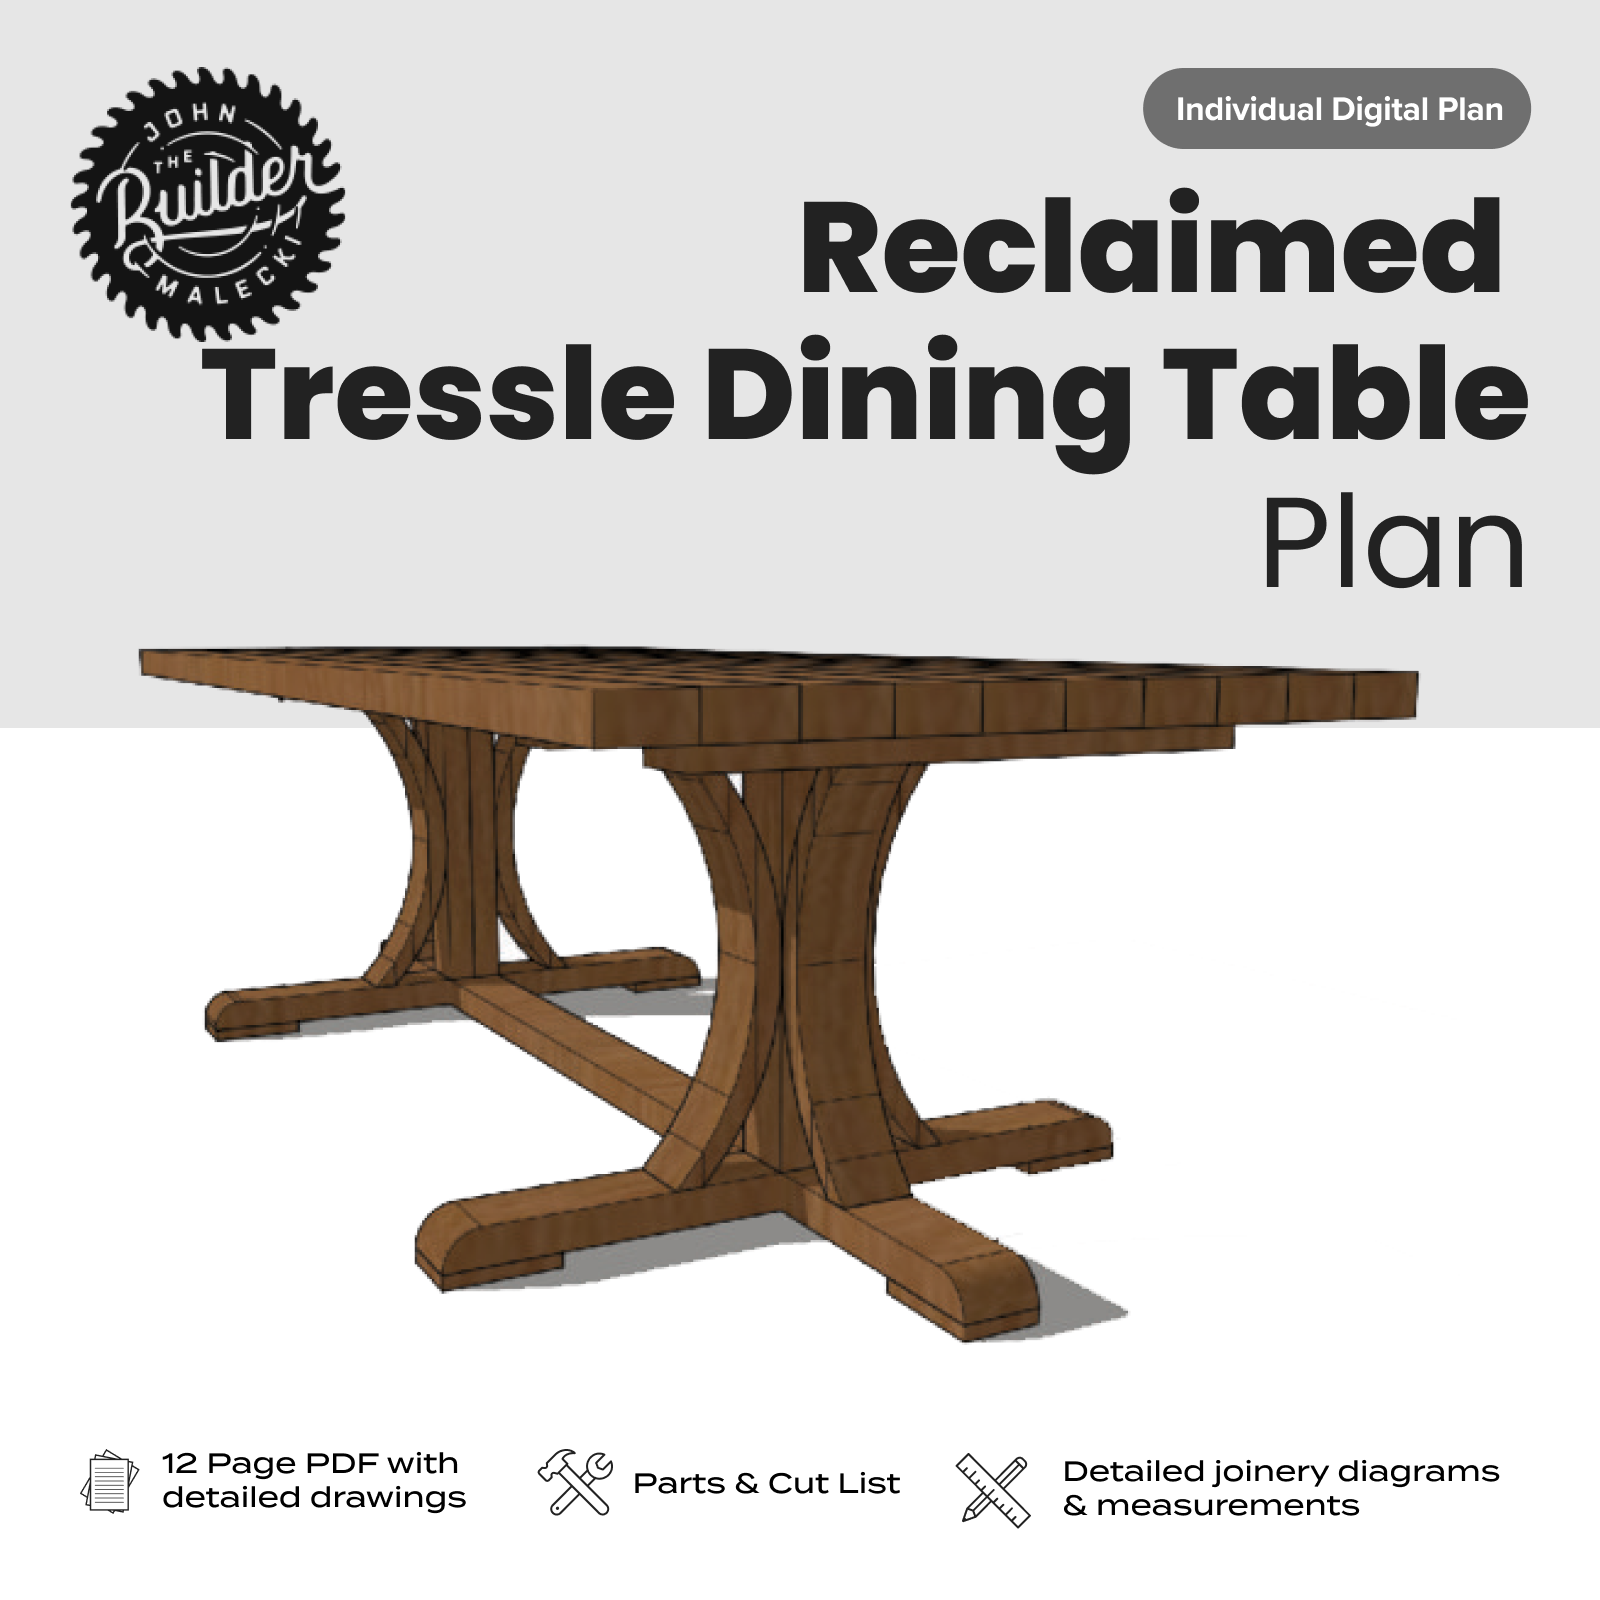 Reclaimed Tressle Dining Table Plan - John Malecki Store